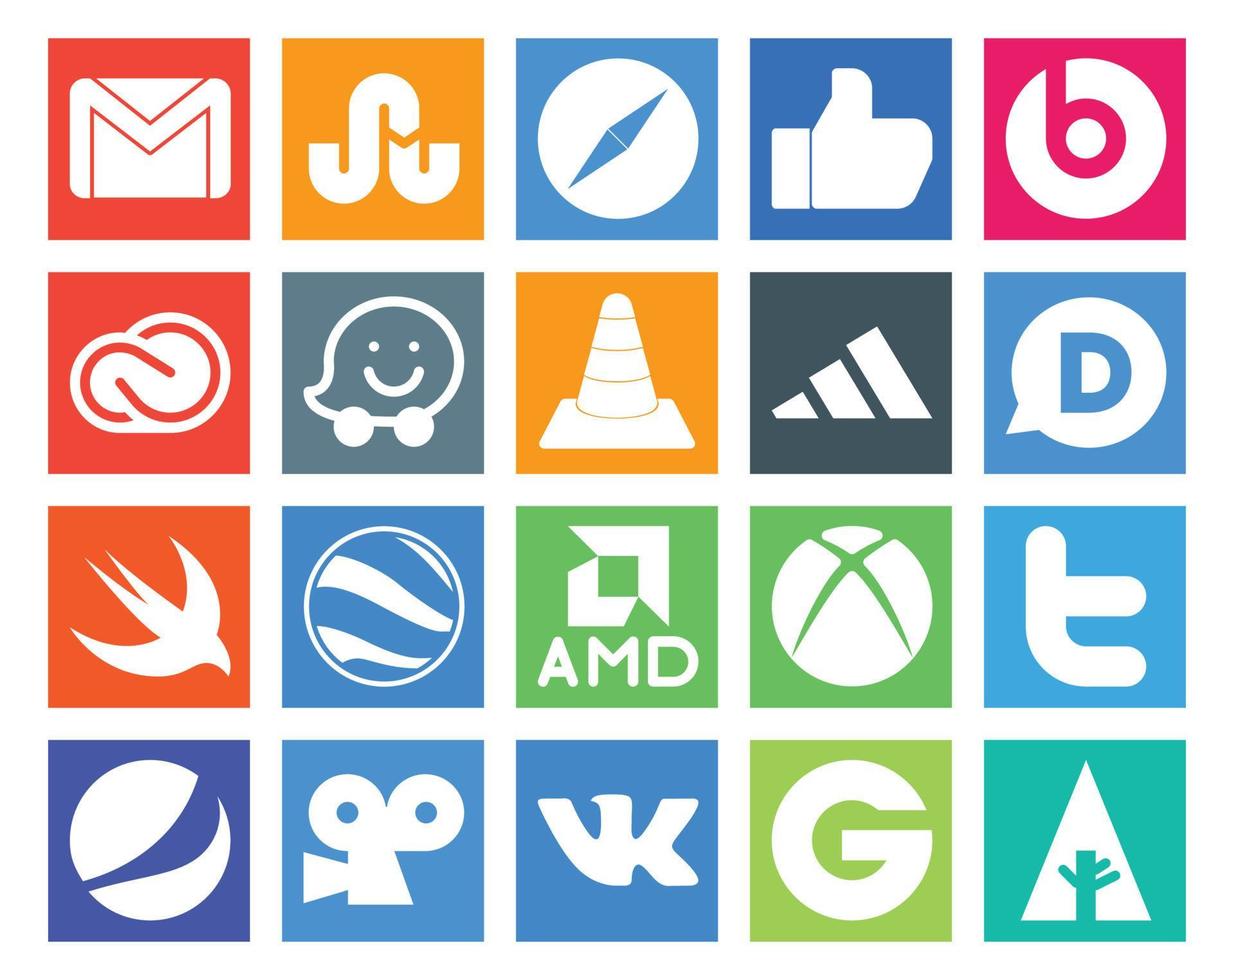 Paquete de 20 íconos de redes sociales que incluye Swift adidas Creative Cloud Player vlc vector